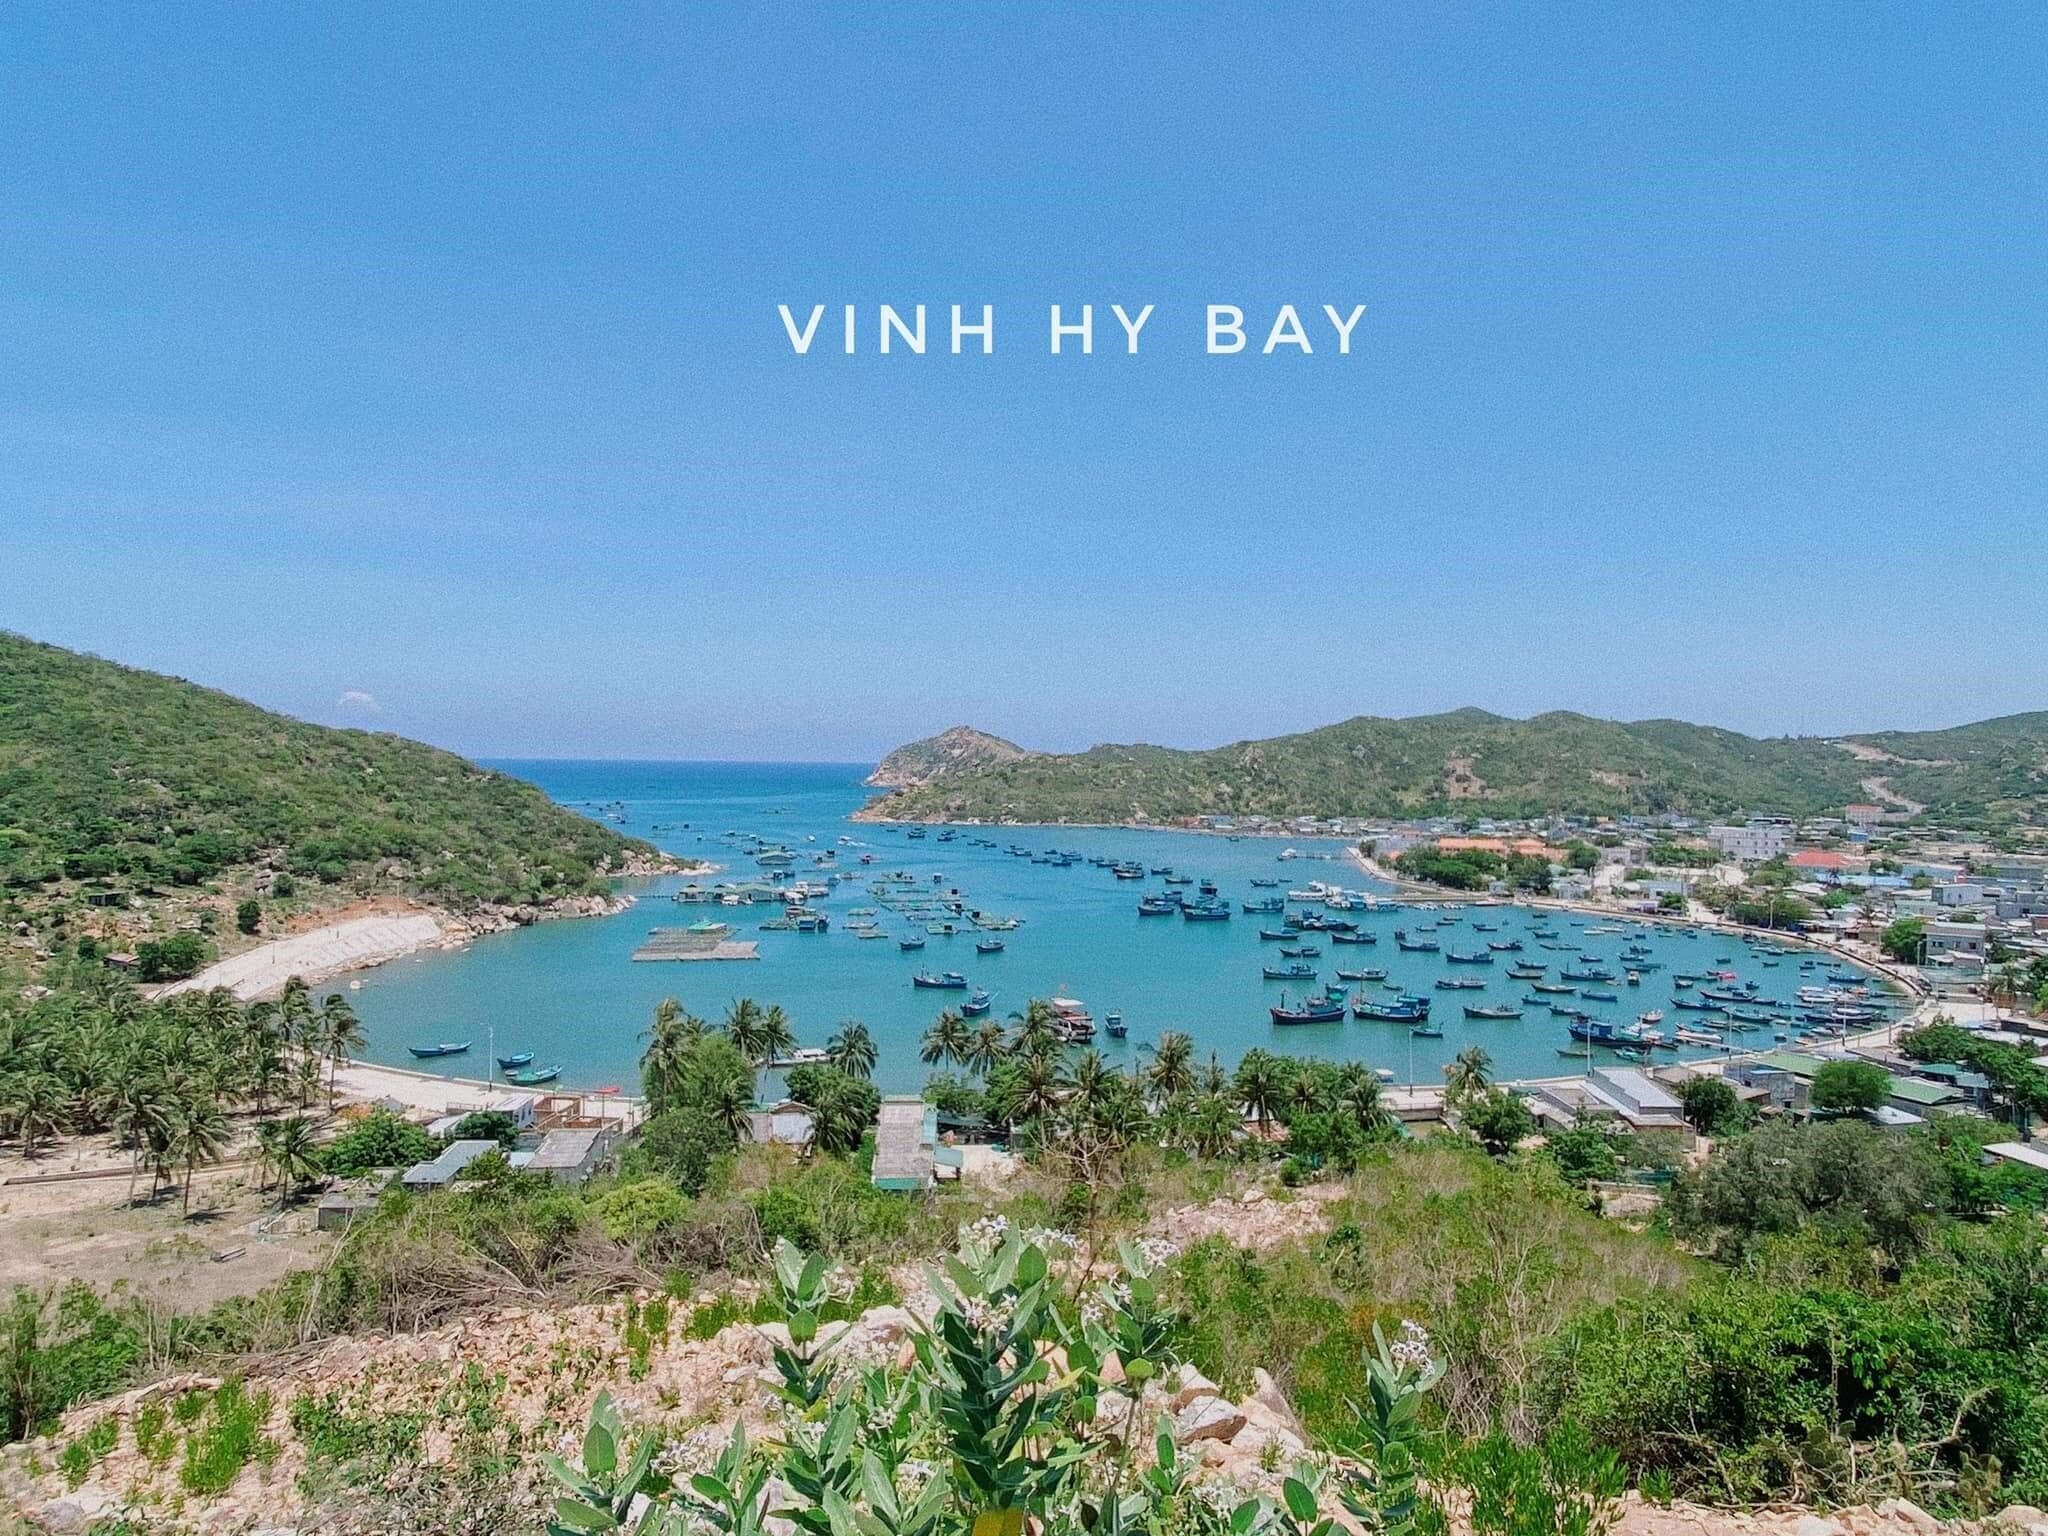 Trải nghiệm du lịch Vĩnh Hy Ninh Thuận 2022 đem lại những điều hấp dẫn với khung cảnh thiên nhiên tuyệt đẹp, bãi biển trong xanh và cát trắng mịn màng. Du khách còn có cơ hội khám phá các khu bảo tồn sinh quyển, tham gia các hoạt động thể thao ngoài trời và thưởng thức ẩm thực đặc sản độc đáo của vùng.